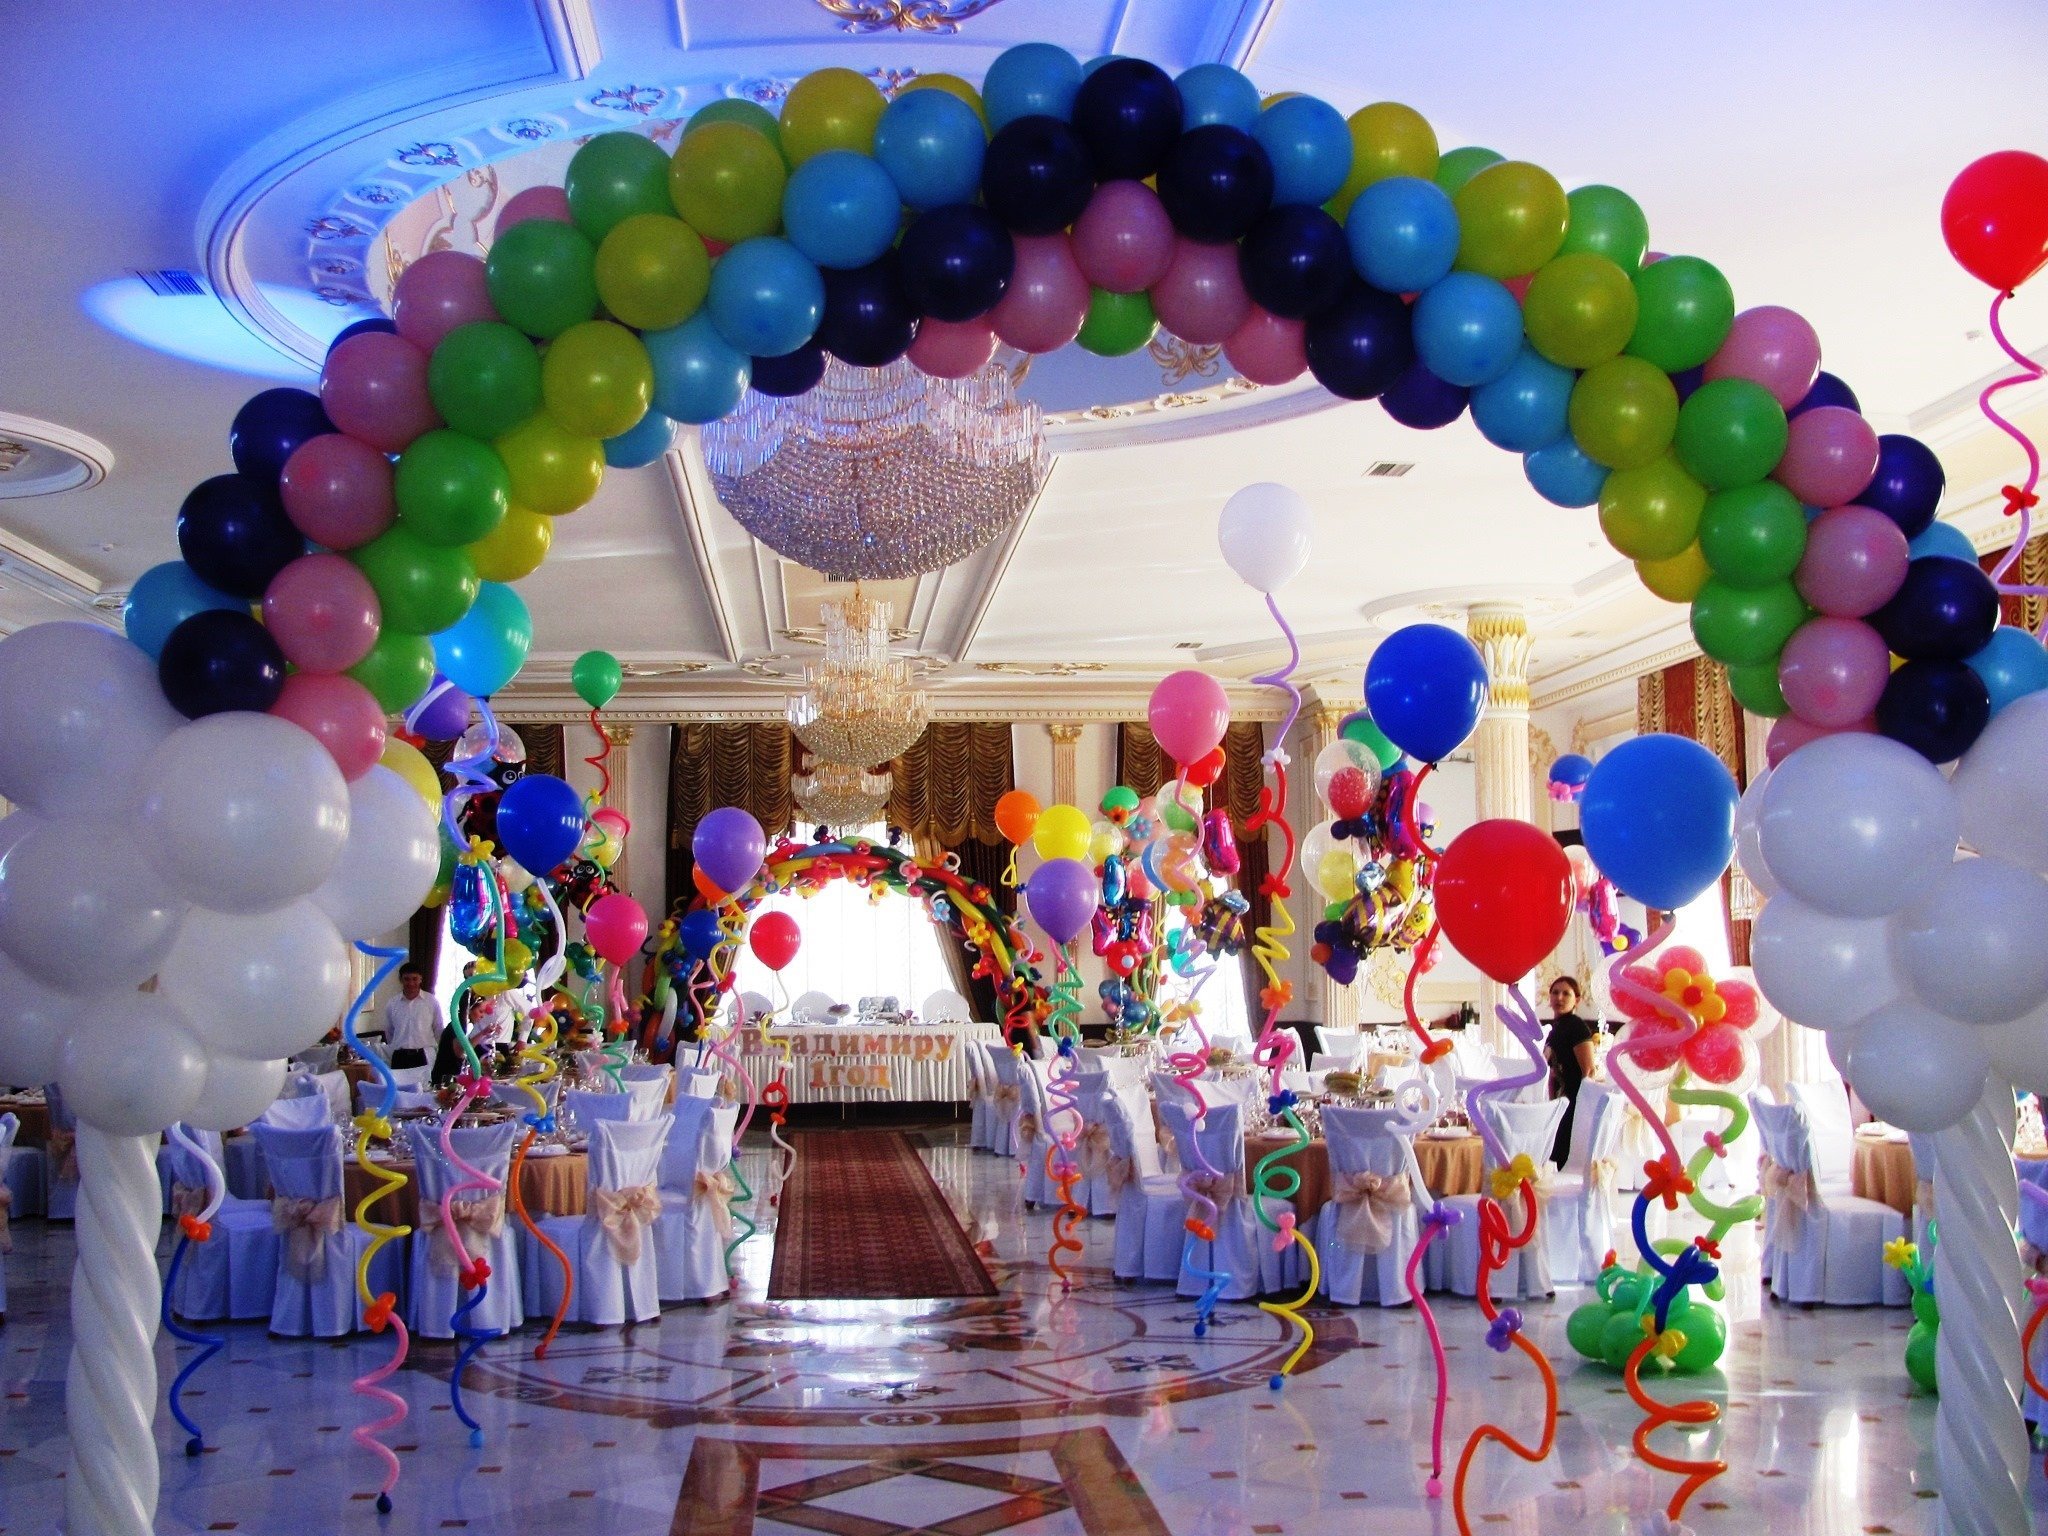 Организация мероприятий площадка. Украсить зал для торжества. Оформление праздника шарами. Зал для детского дня рождения. Украшение помещения шариками для мероприятия.